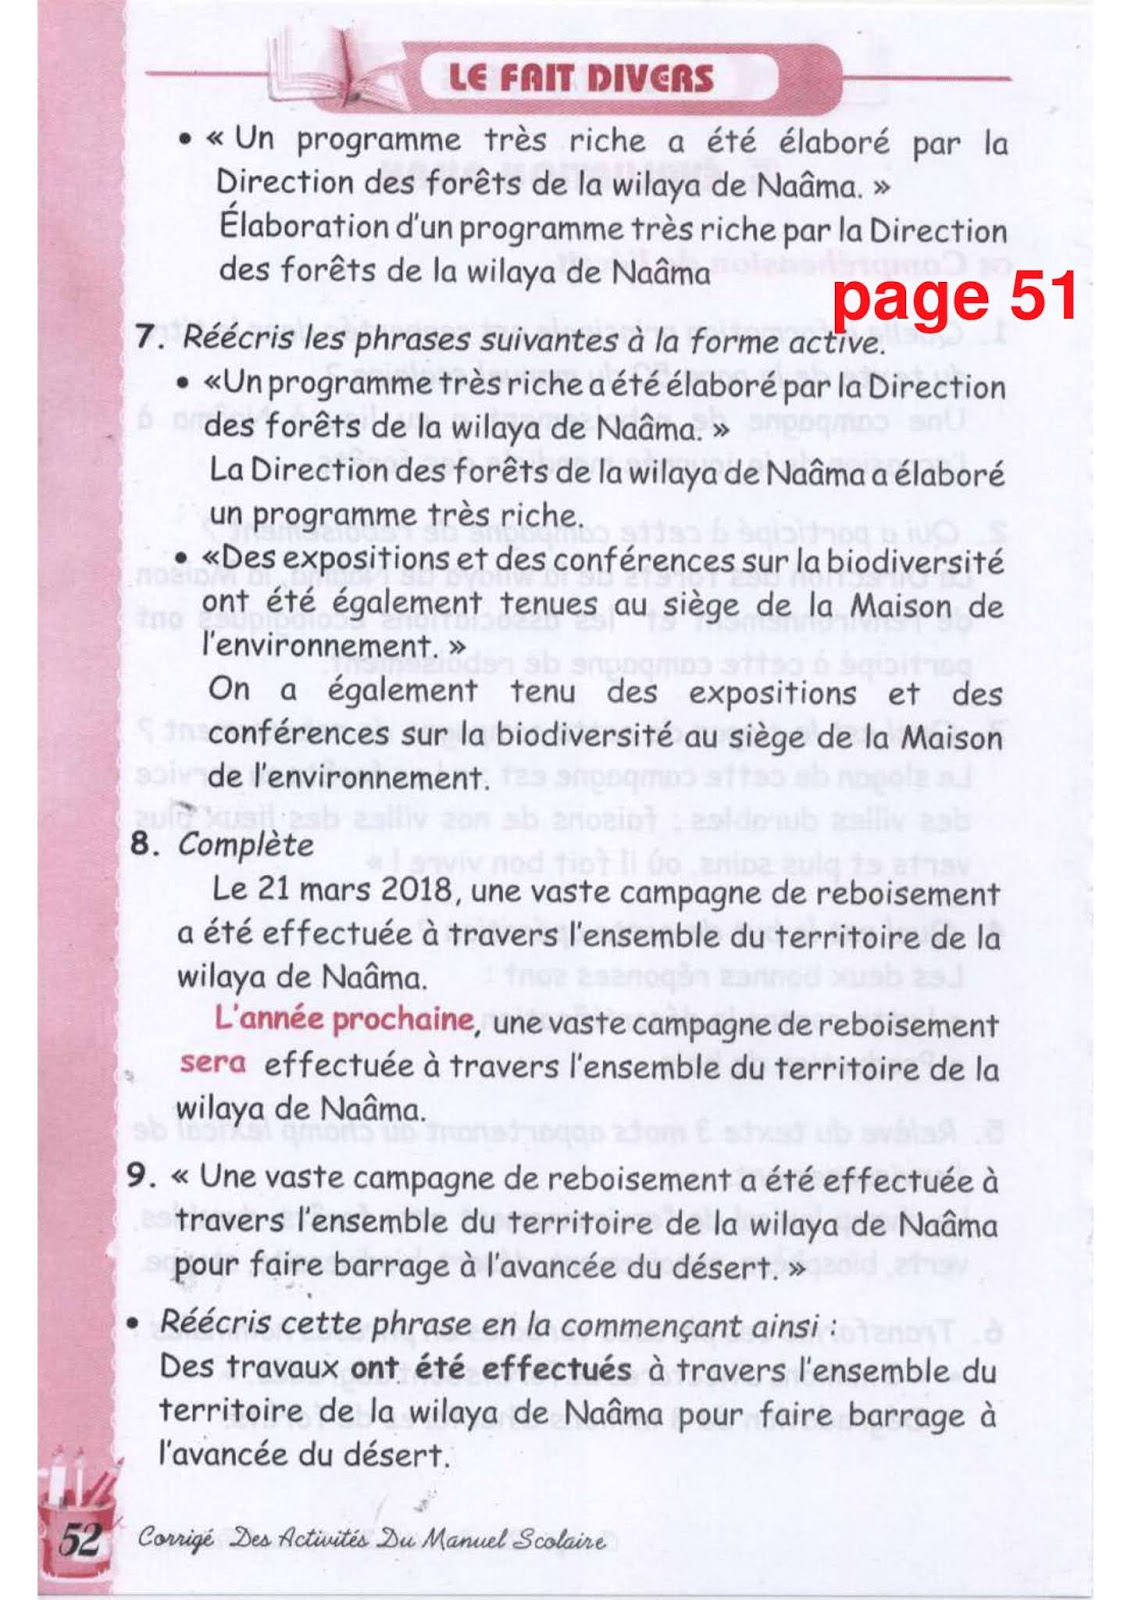 حل تمارين صفحة 51 الفرنسية للسنة الثالثة متوسط - الجيل الثاني